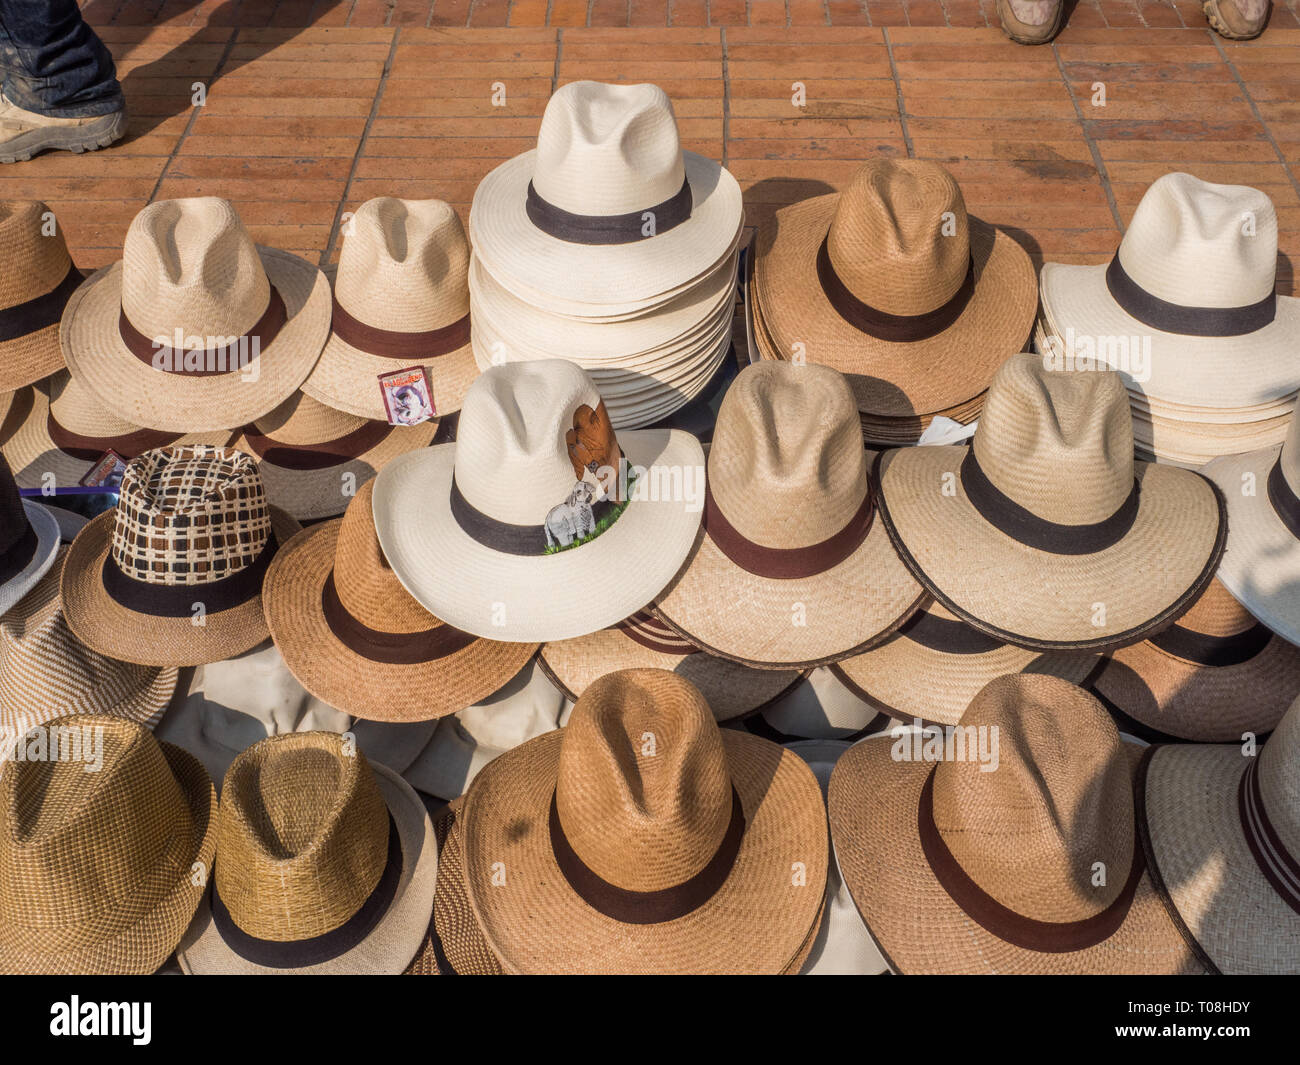 Eine Panama Hut, toquilla Strohhut, ist ein traditionelles Krempe Strohhut  der Ecuadorianischen Herkunft, verkauft auf der Straße von Bogota.  Kolumbien. Lateinamerika. UNE Stockfotografie - Alamy